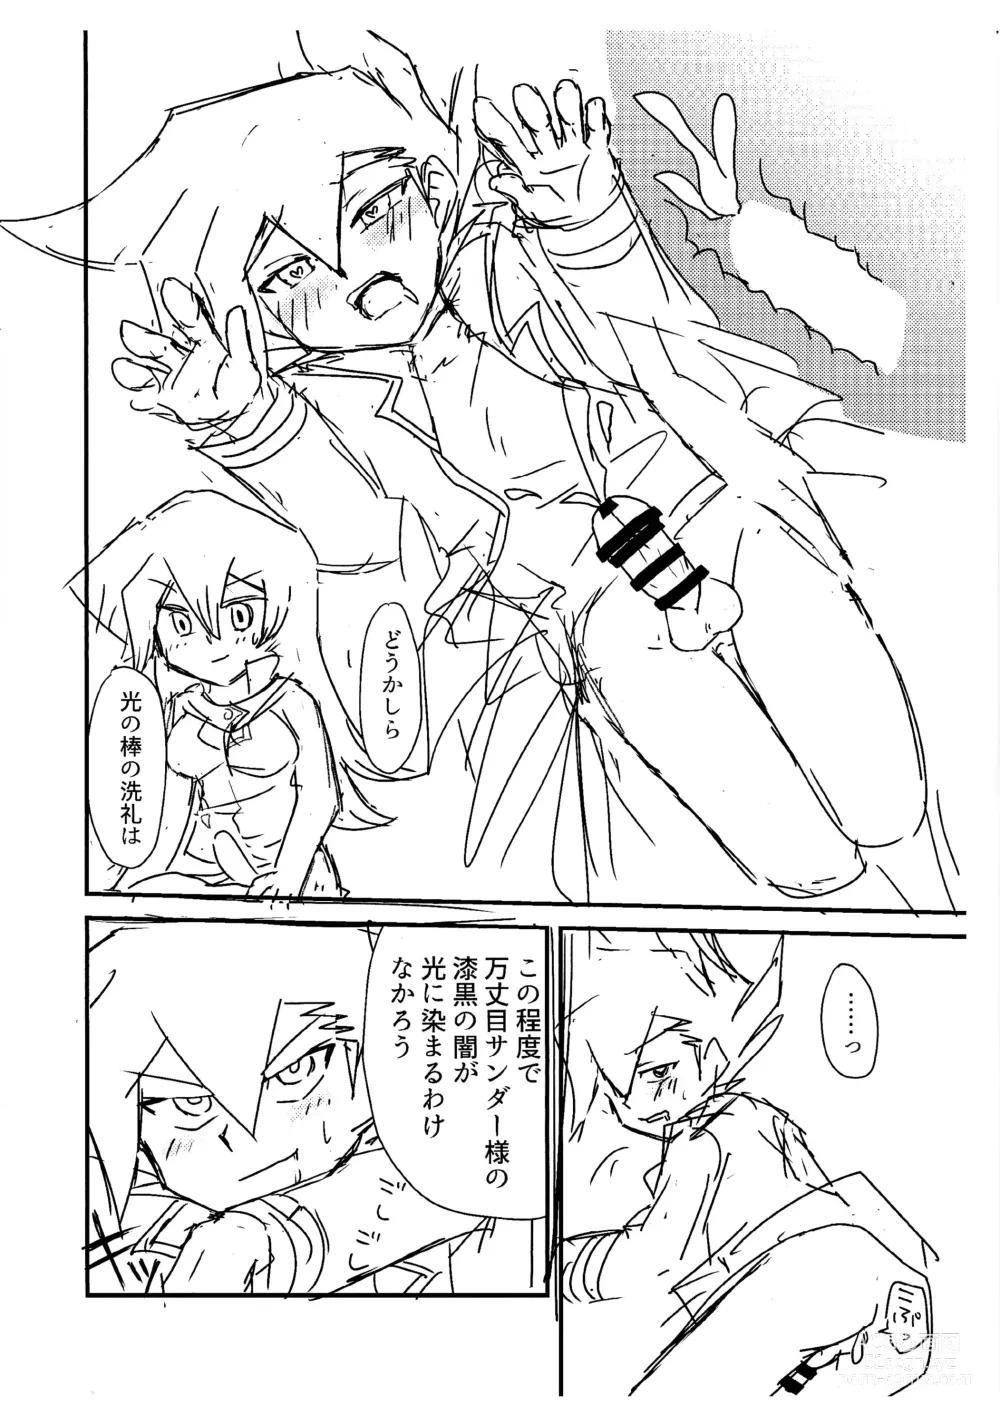 Page 7 of doujinshi Kuro no ore ga mata shiroku some rareyou to shite iru yodaga!?